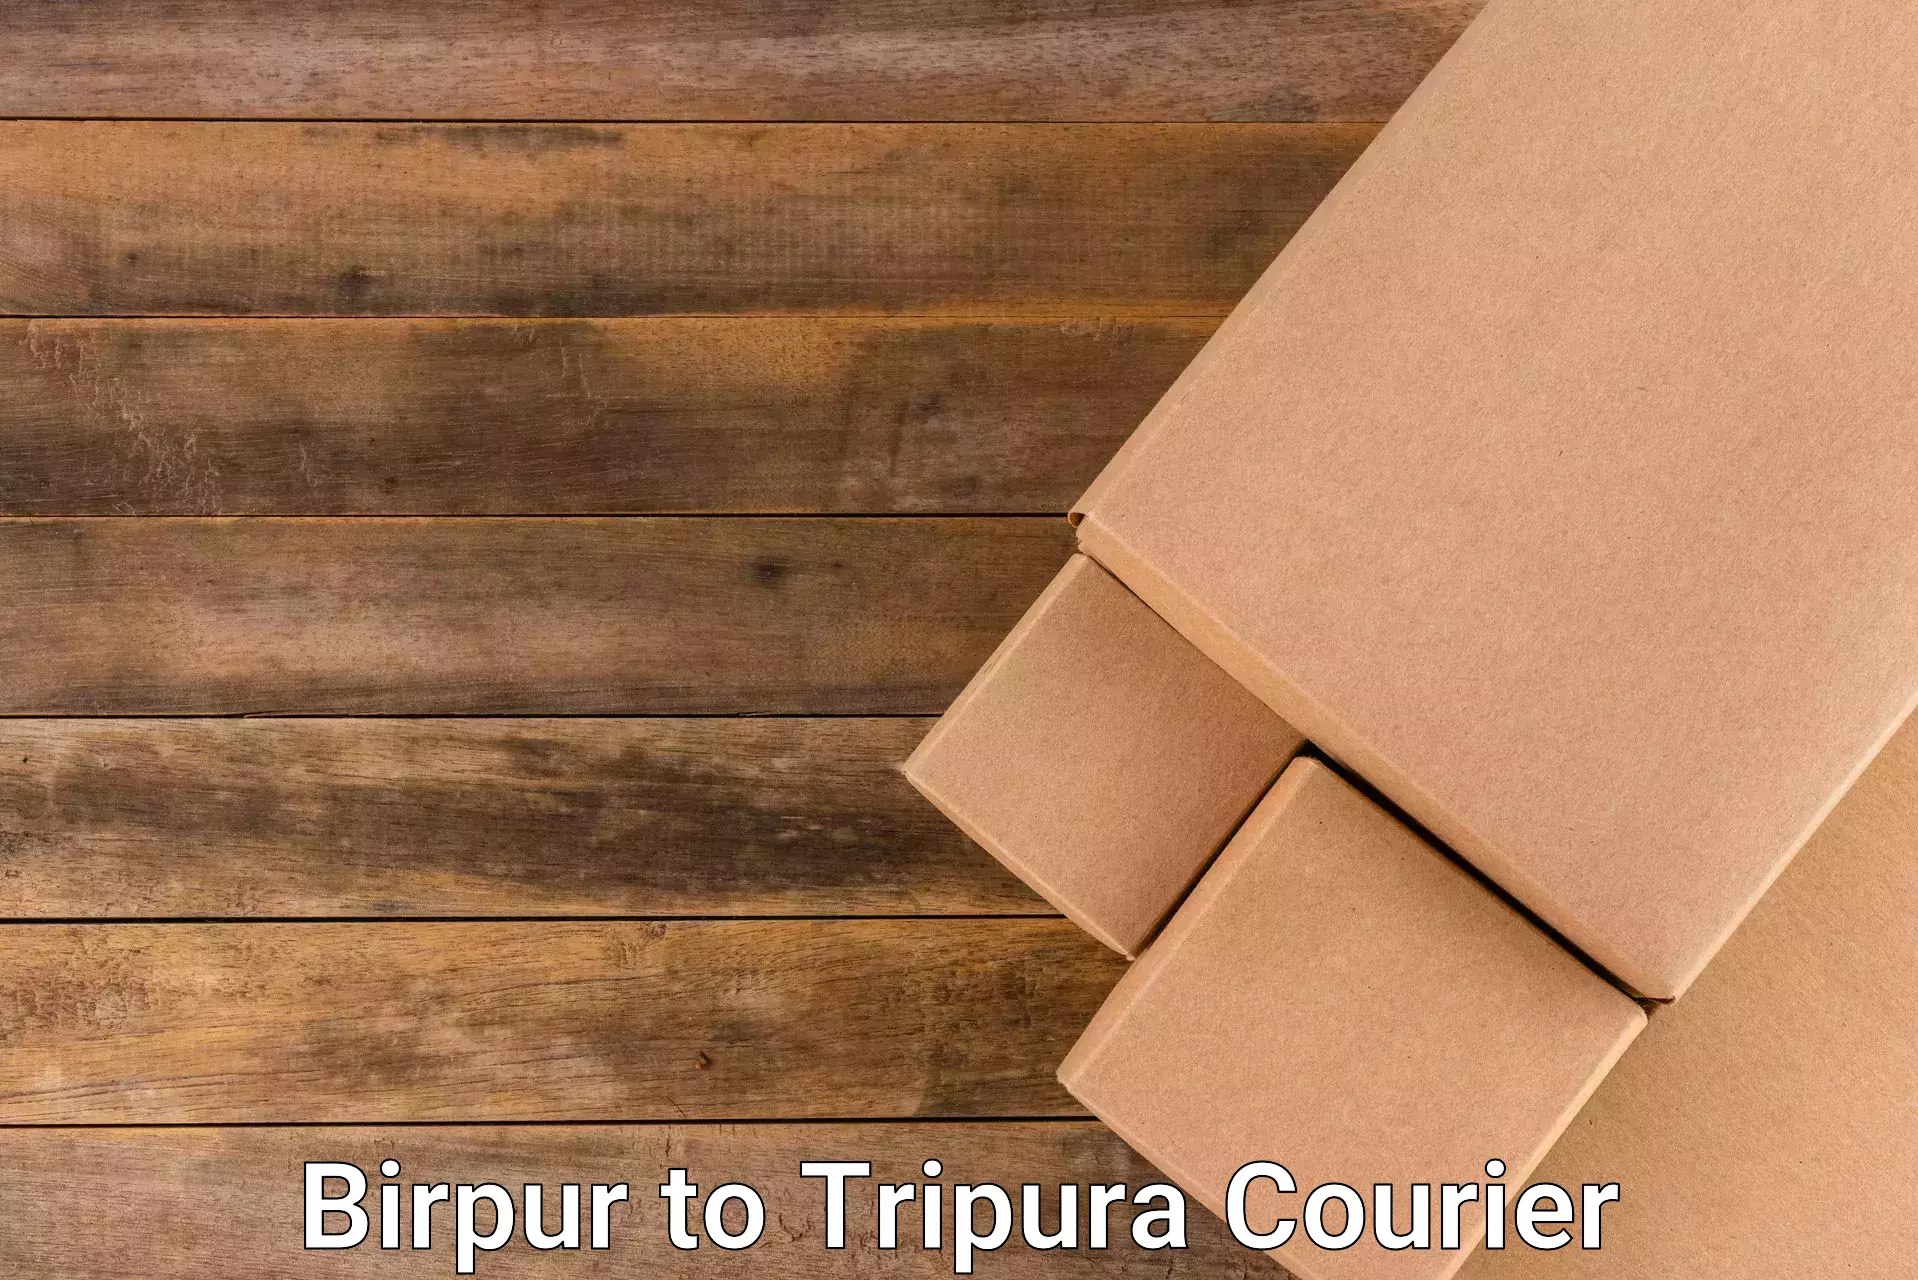 Customer-centric shipping in Birpur to Manu Bazar